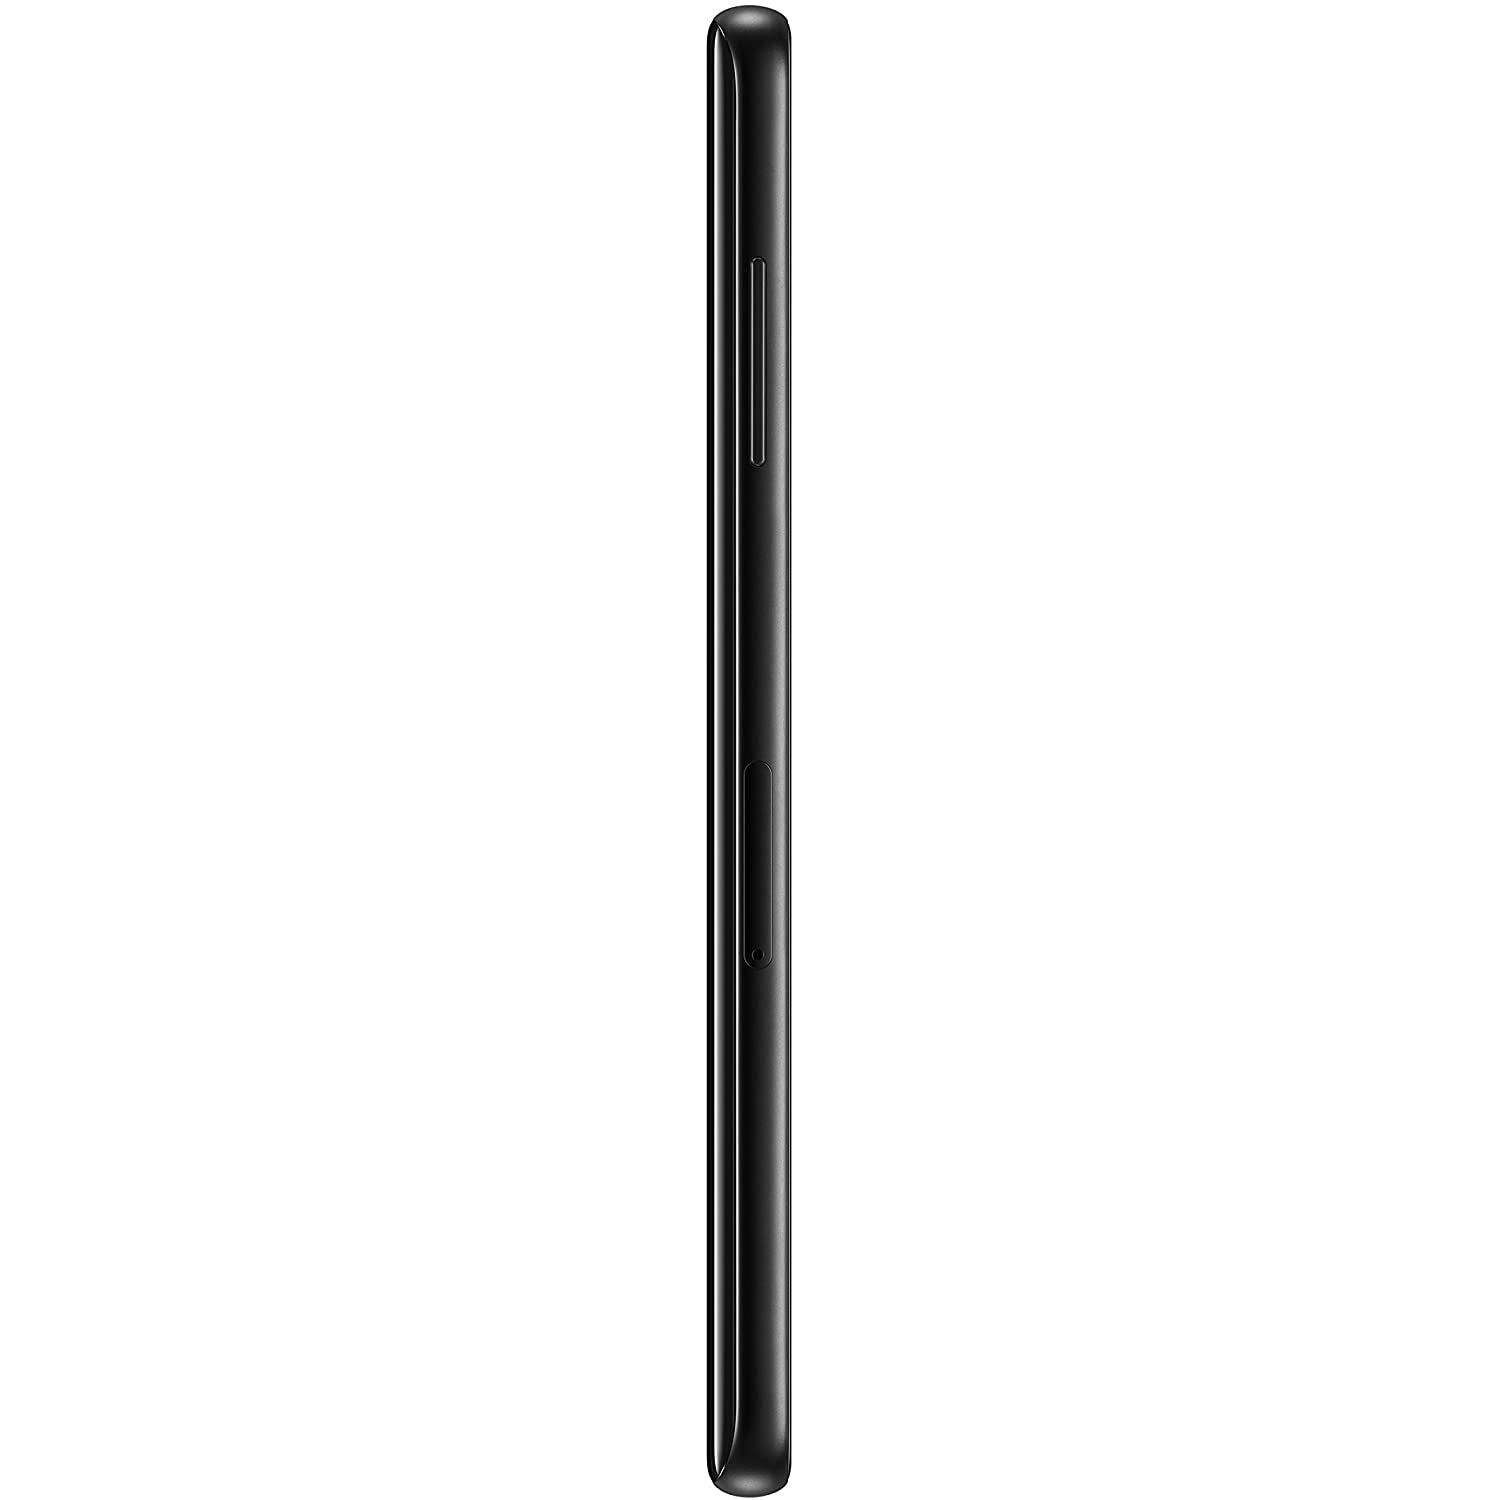 Samsung Galaxy A8 SM-A530F Smartphone, 32GB, Black (2018)